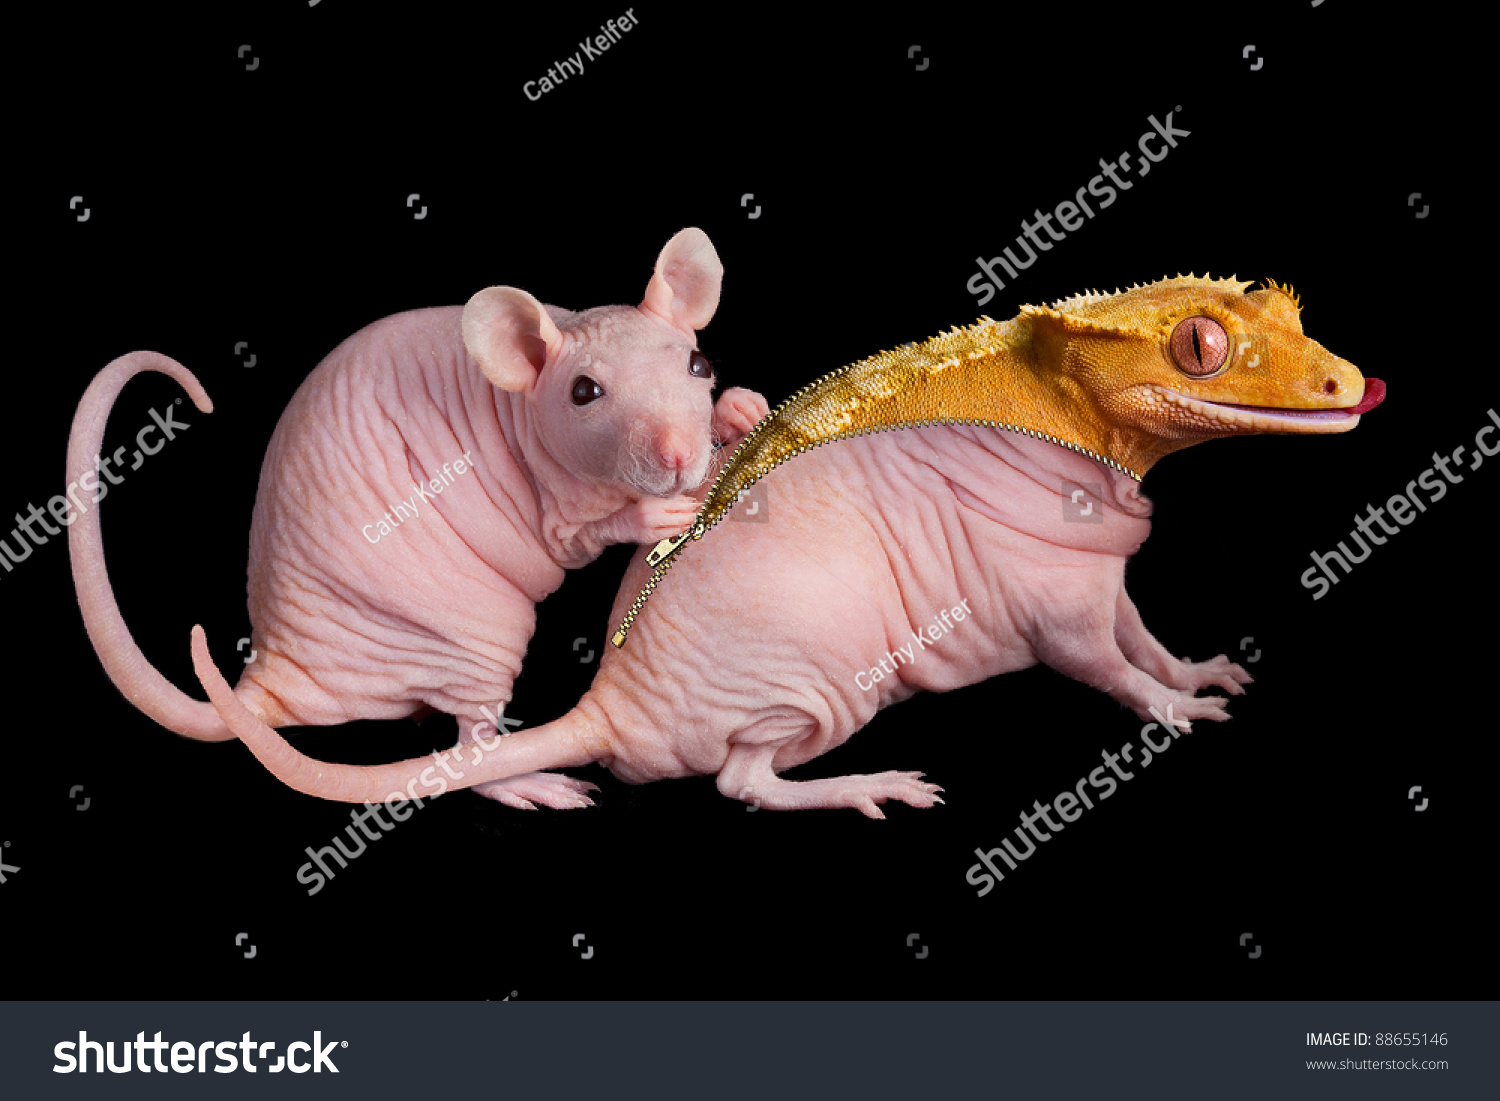 stock-photo-a-dwarf-hairless-rat-unzips-